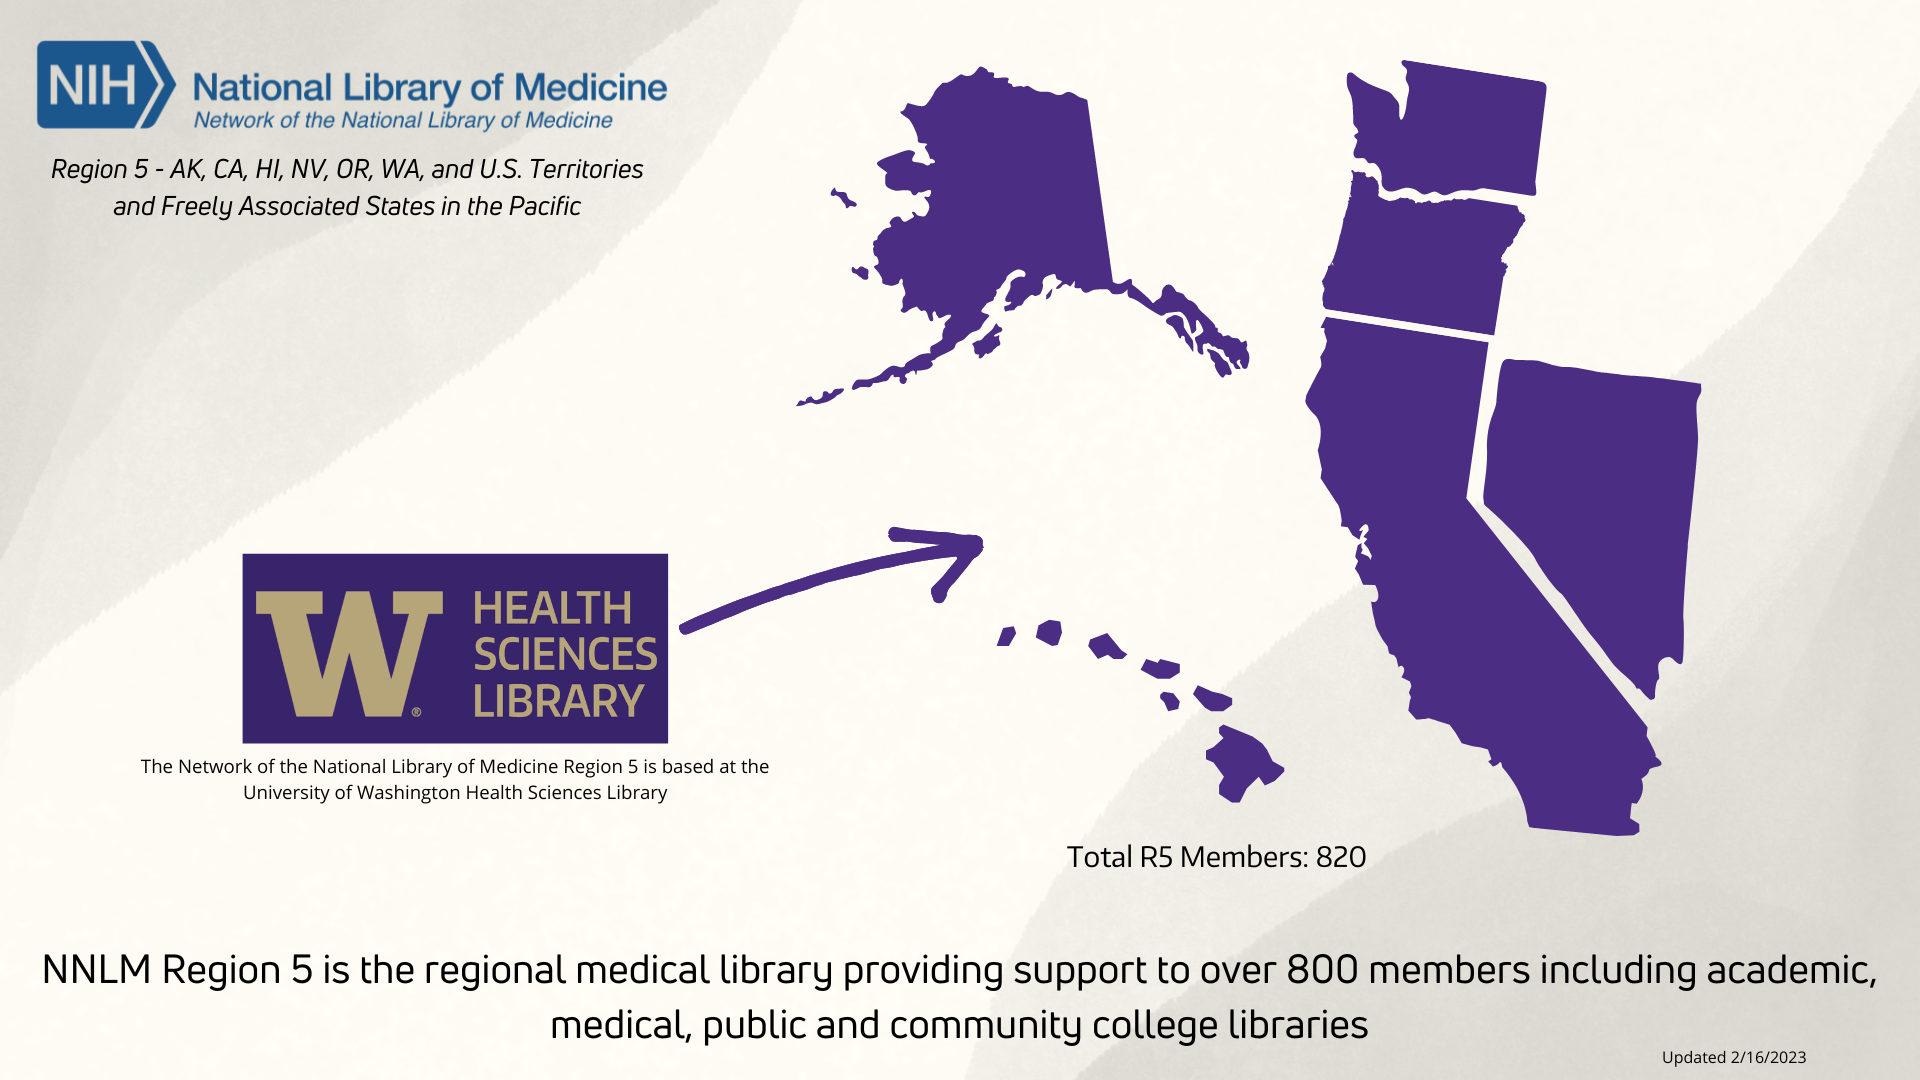 The University of Washington Health Sciences Library supports users across Washington, Wyoming, Alaska, Montana, and Idaho (WWAMI).